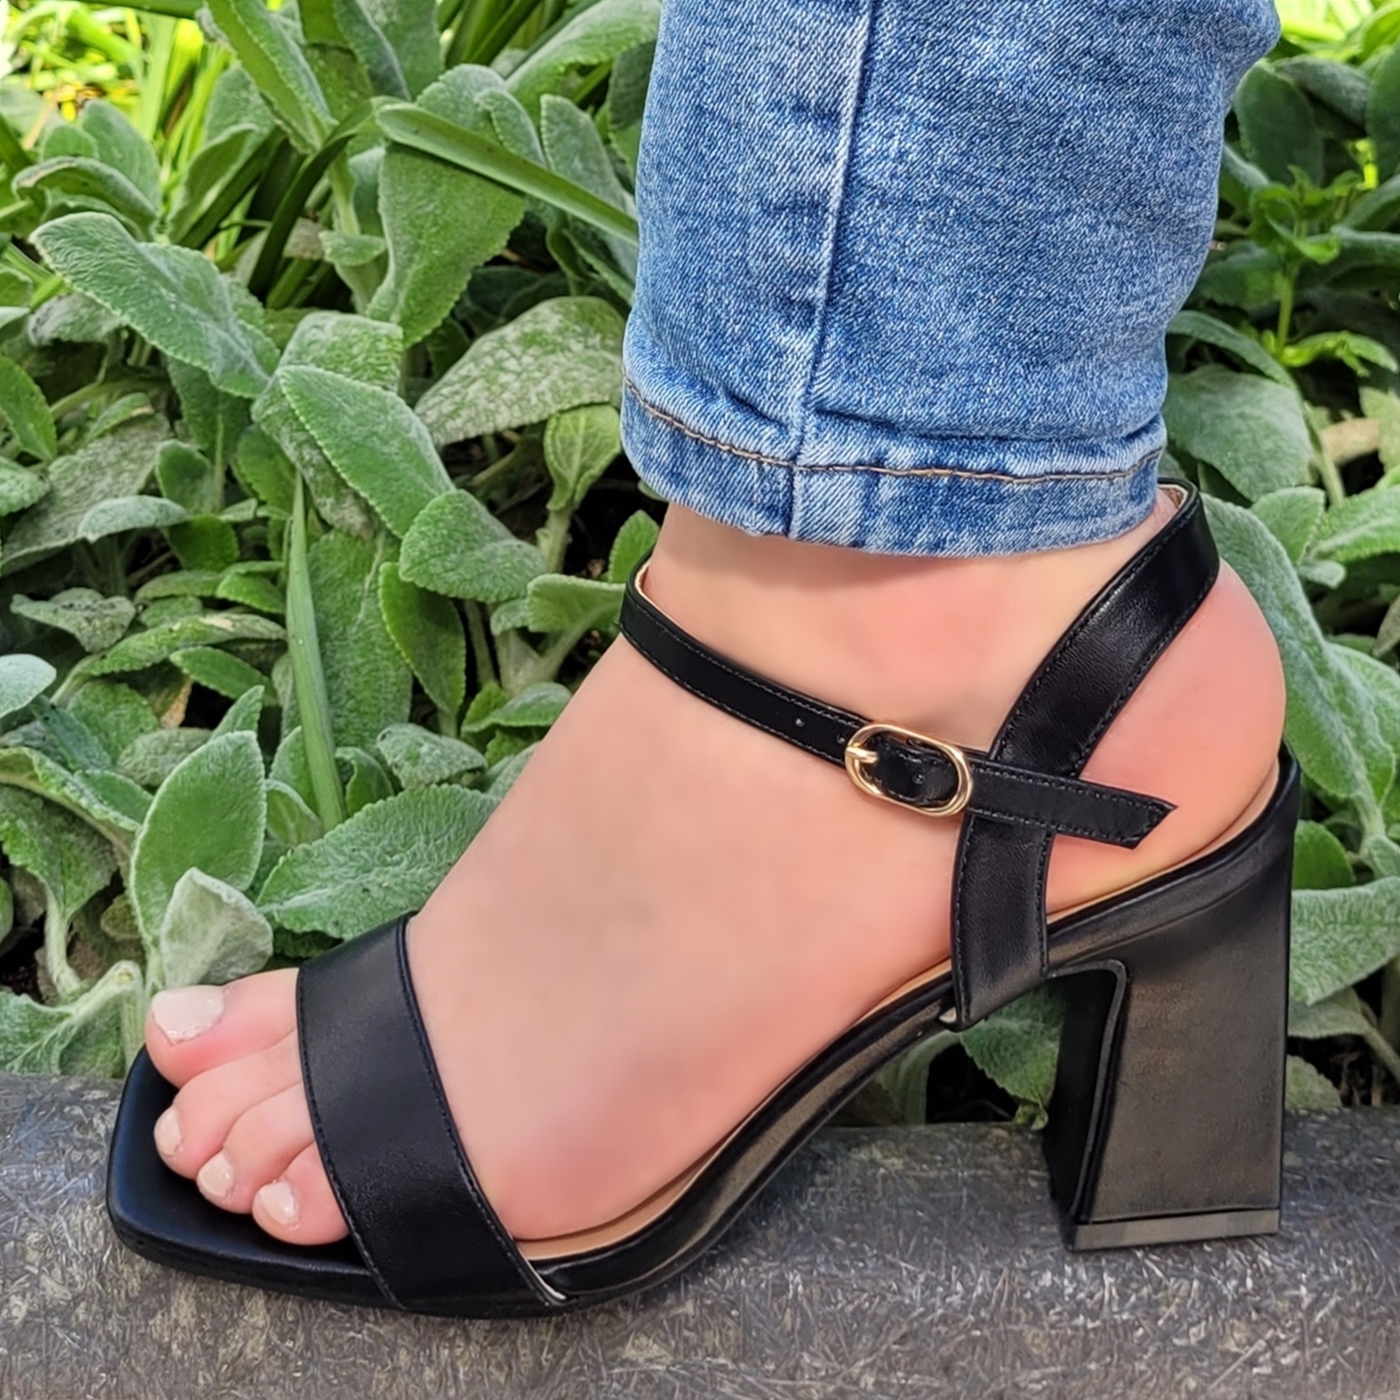 2725-10-042 – Zwarte sandalen met blokhak van 9 cm – Zwarte sandalen met vierkante neus